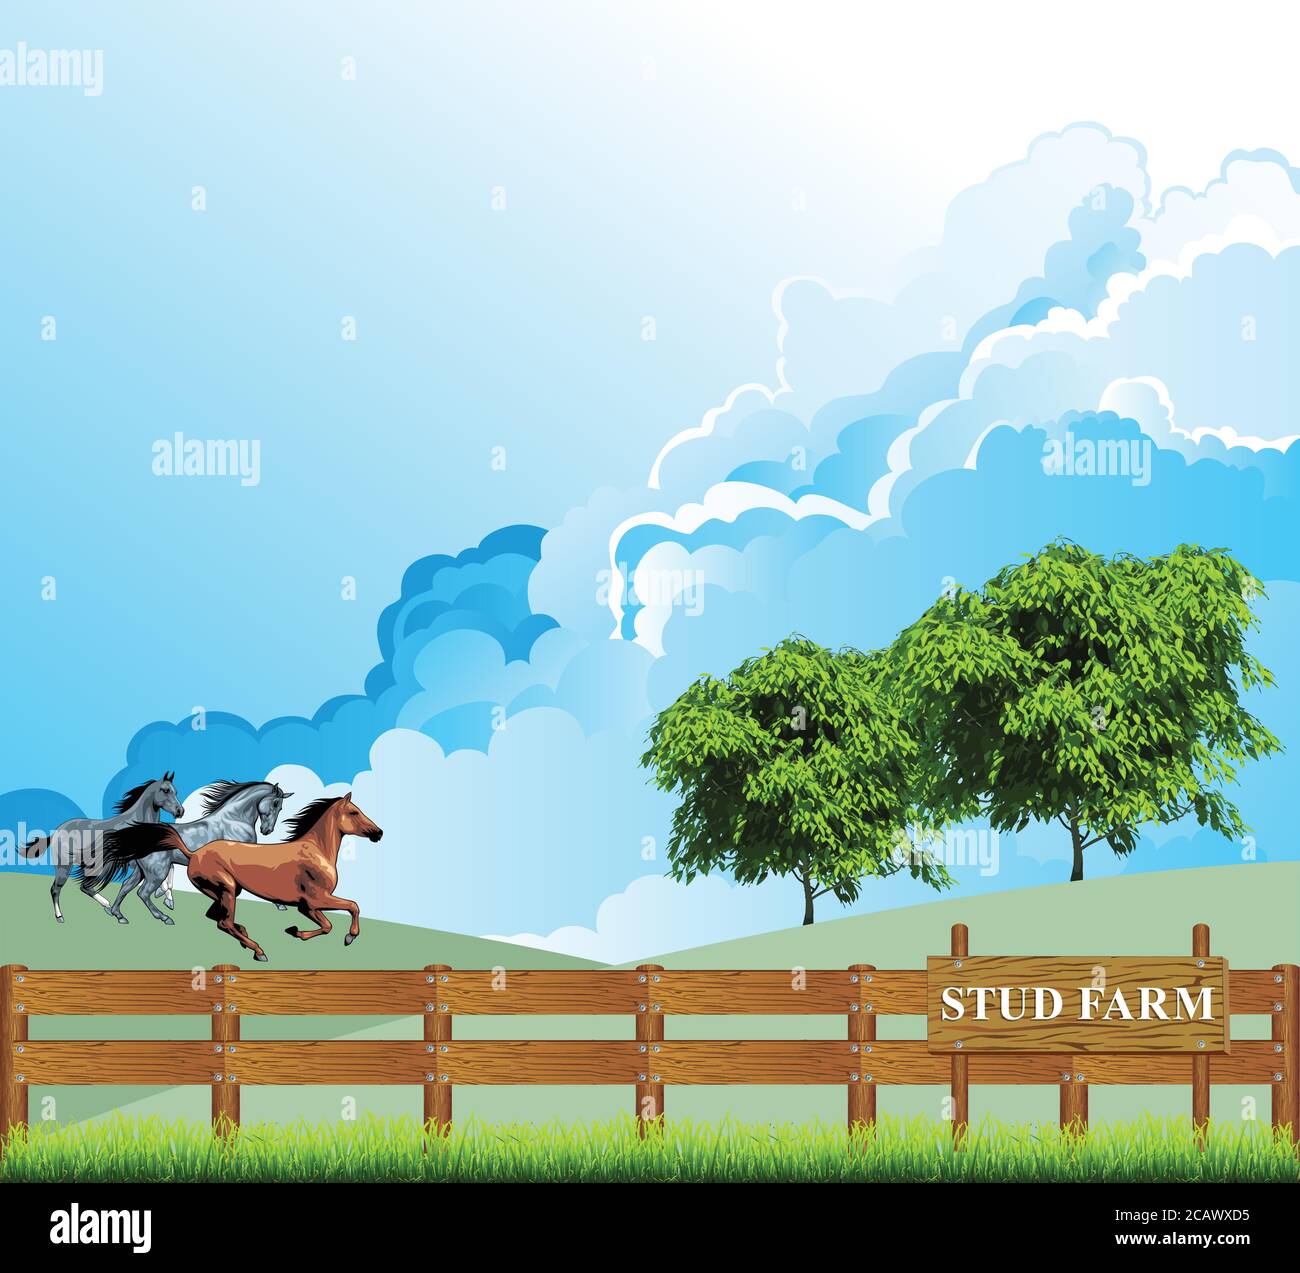 Pintoresca escena rural con caballos corriendo a través de un paddock en una granja de cría de sementales contra un cielo azul nublado Ilustración del Vector